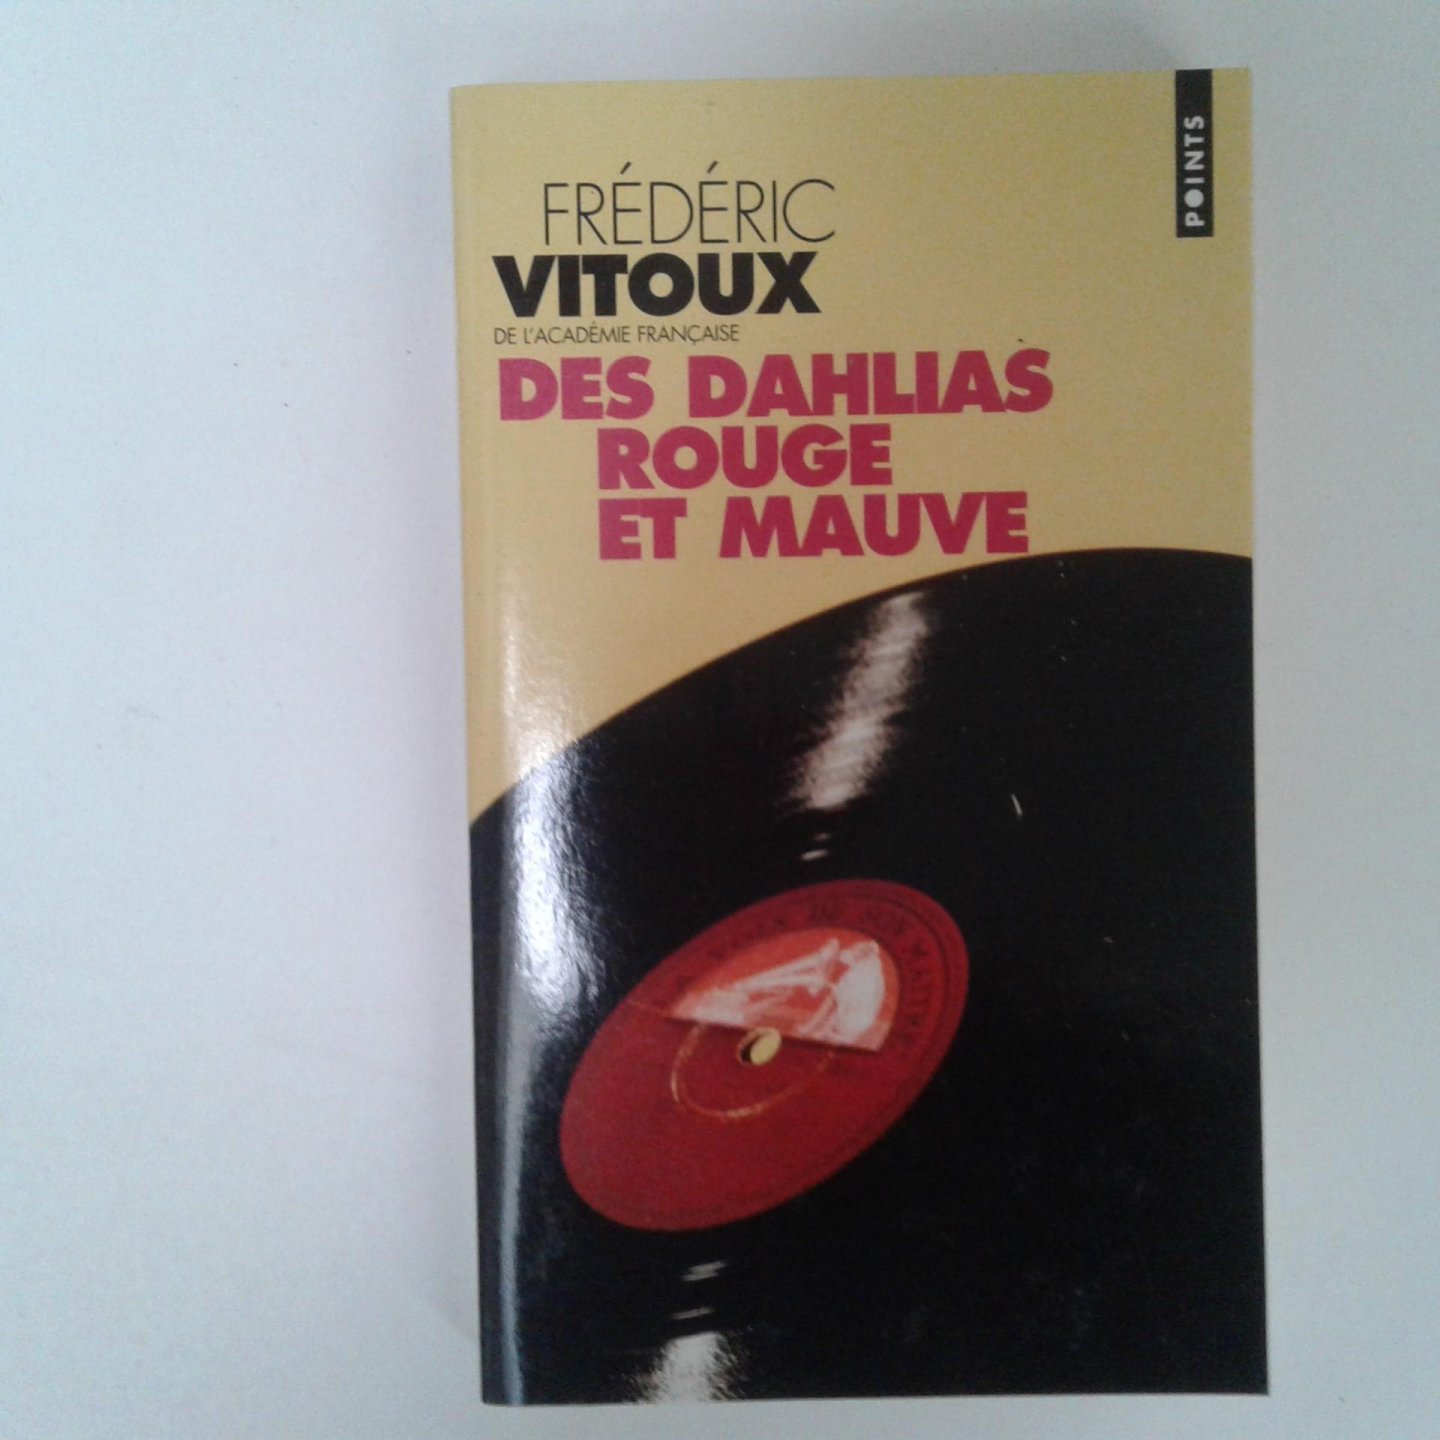 Vitoux, Frēdēric - Des dahlias rouge et mauve